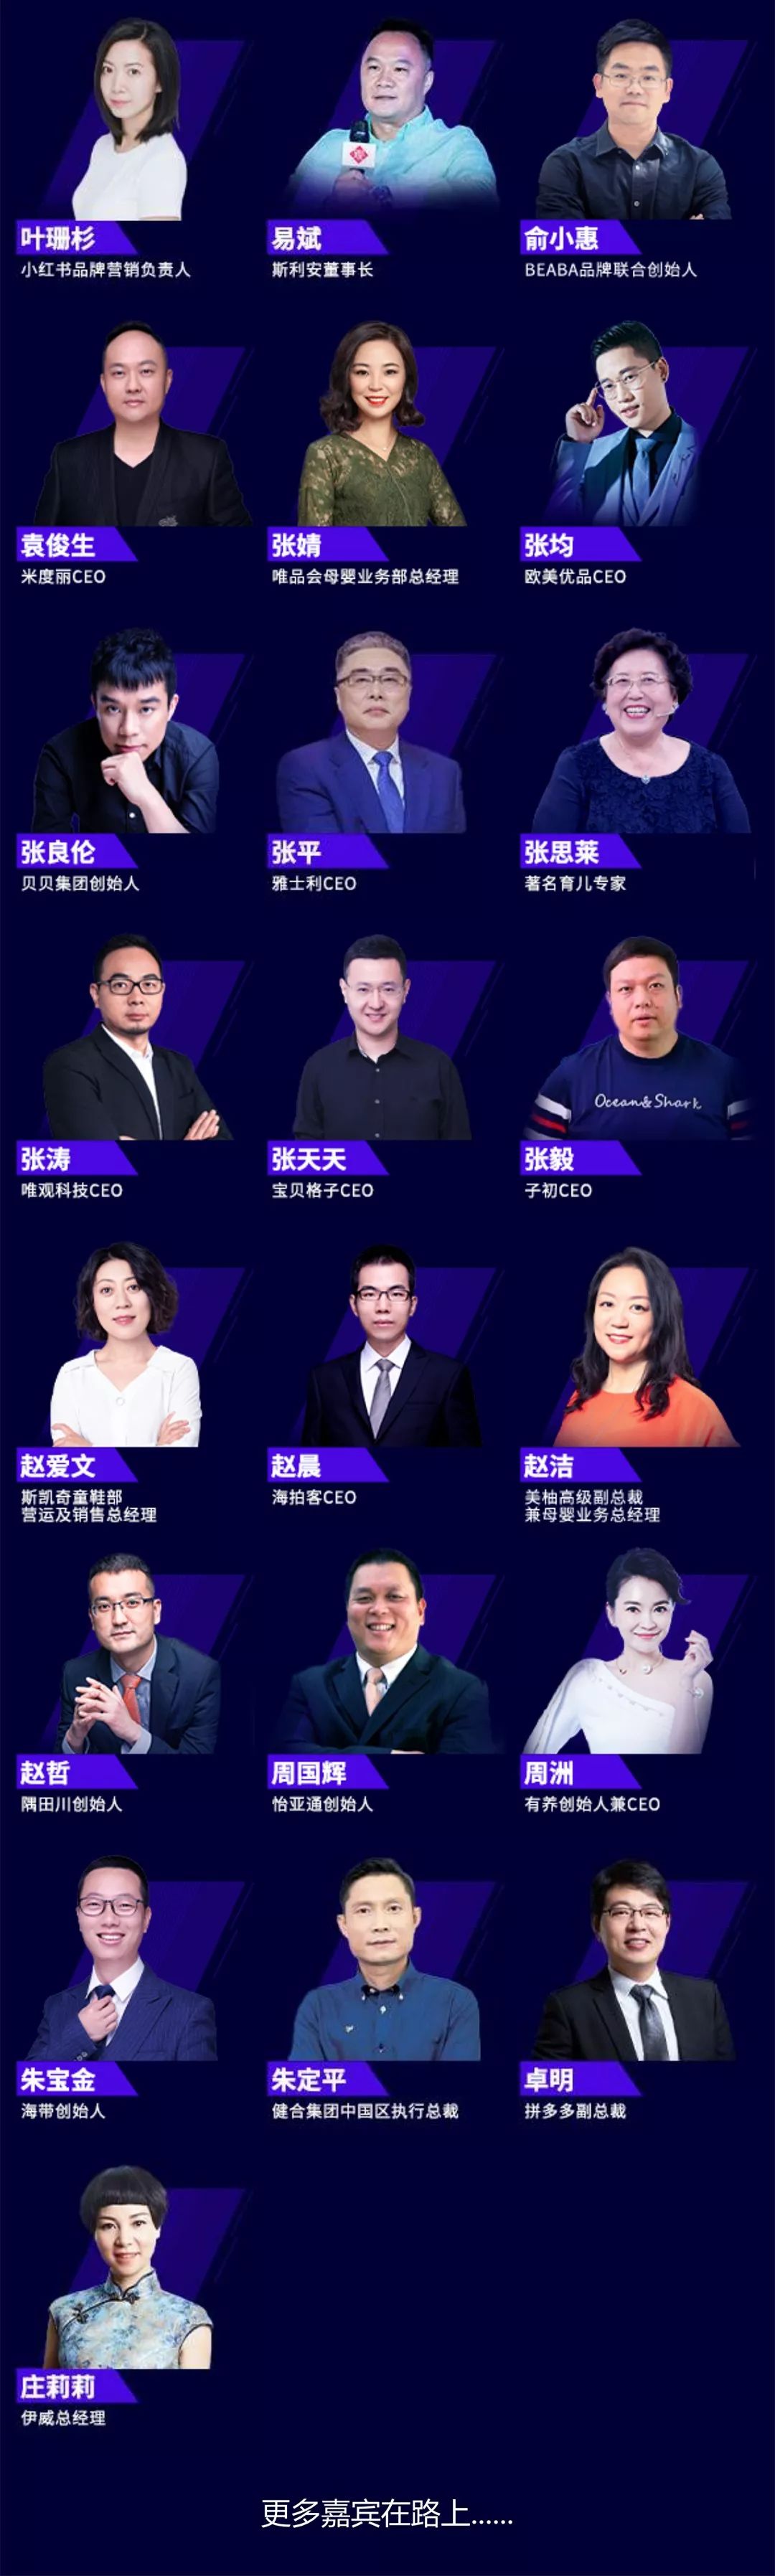 2020中国母婴企业家领袖峰会暨第五届樱桃大赏颁奖盛典（北京）